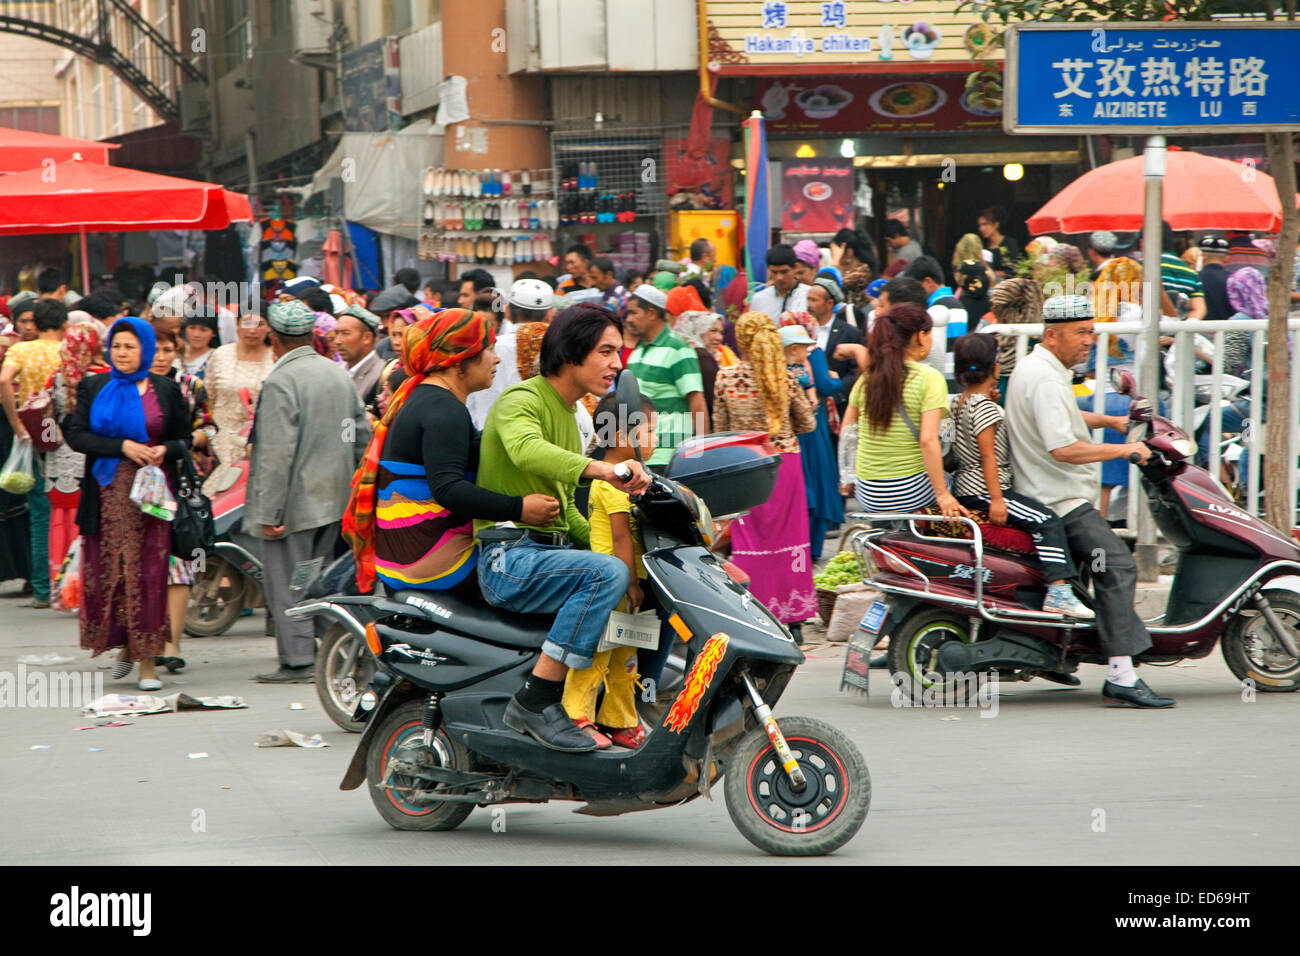 Les Chinois la trottinette, dans rue commerçante animée dans la ville Kashgar / Kashi, la Province du Xinjiang, Chine Banque D'Images